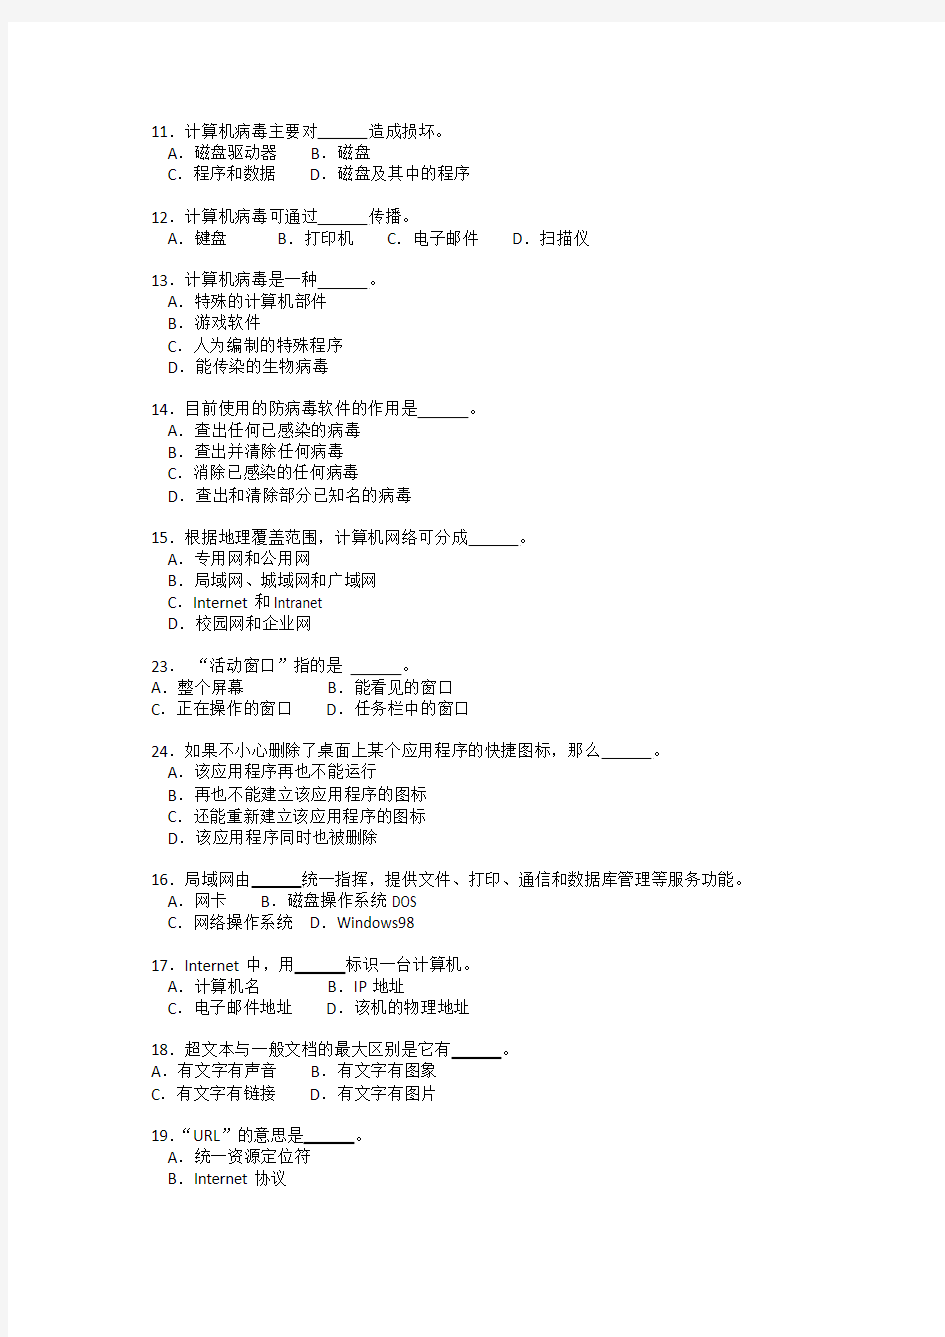 2011年6月11日广西成人高等教育《计算机实用基础》统考理论试题(A卷)(附答案)